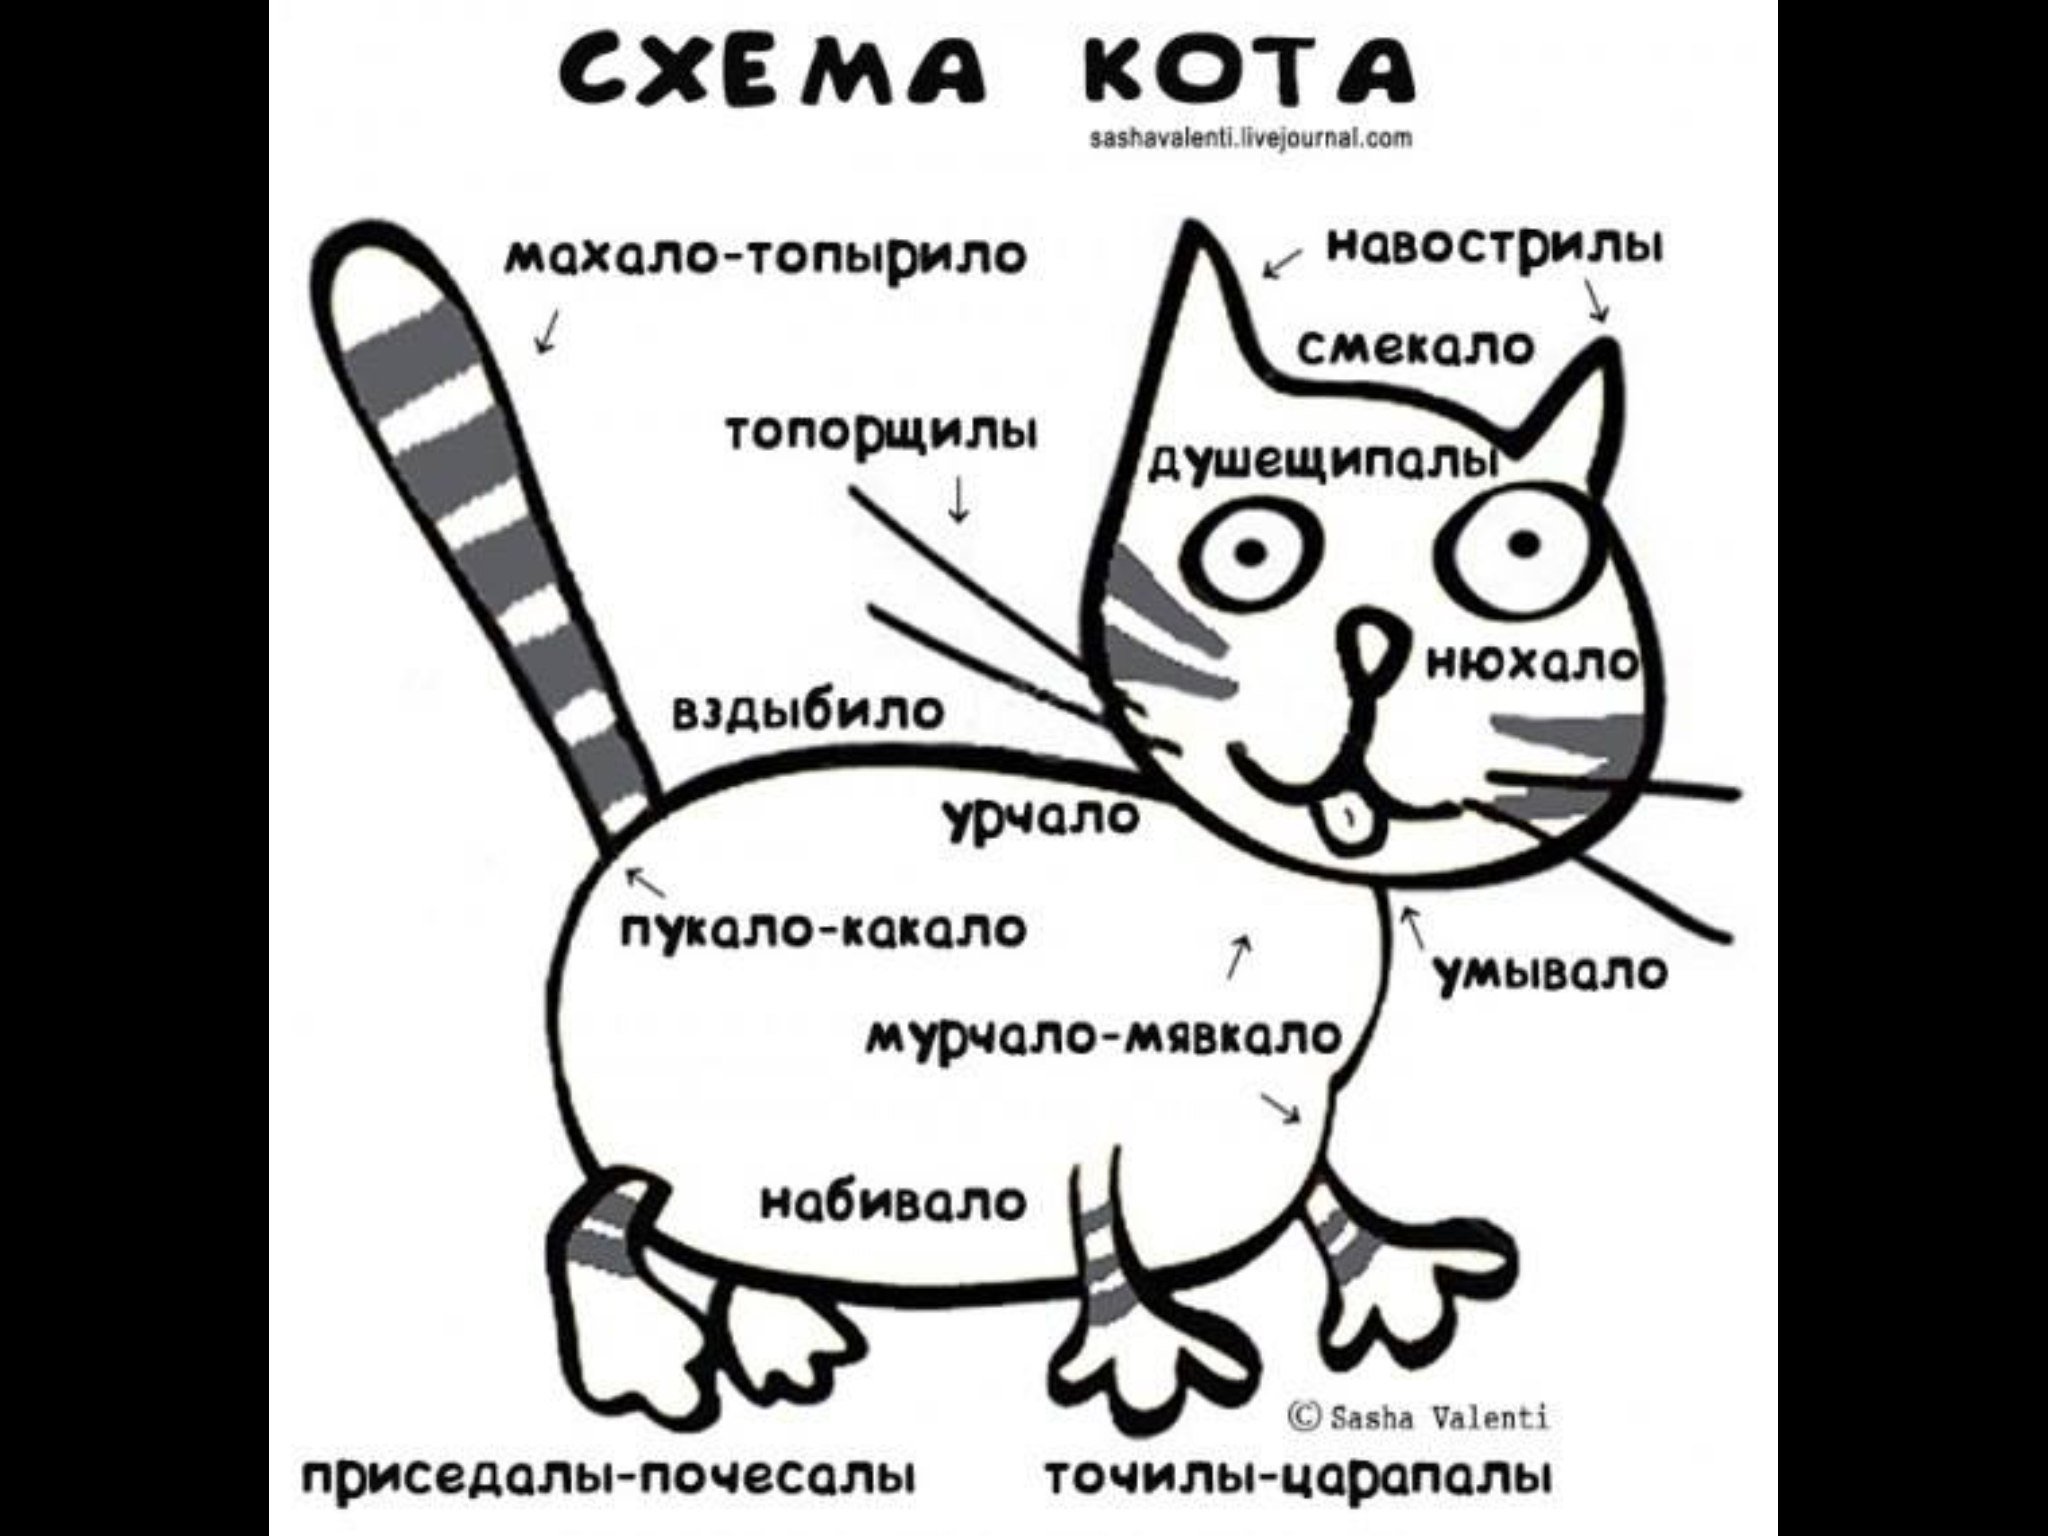 Я не буду читать про. Схема кота. Смешные стихи про котов. Стихотворение про кота смешное. Стих про кота смешной.